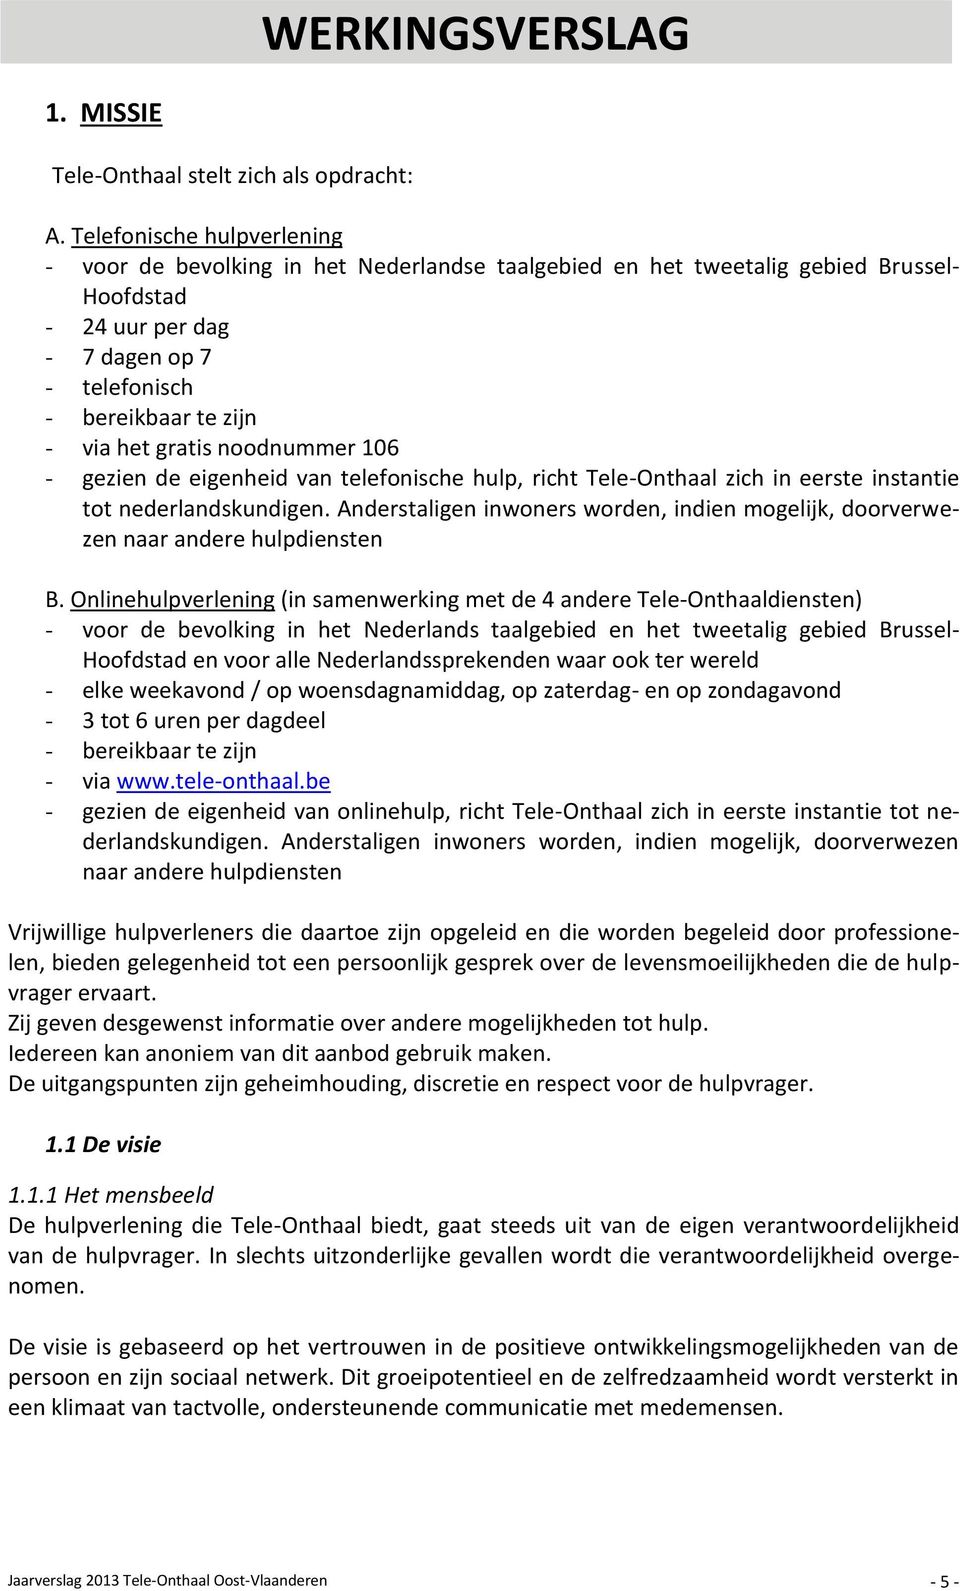 gratis noodnummer 106 - gezien de eigenheid van telefonische hulp, richt Tele-Onthaal zich in eerste instantie tot nederlandskundigen.